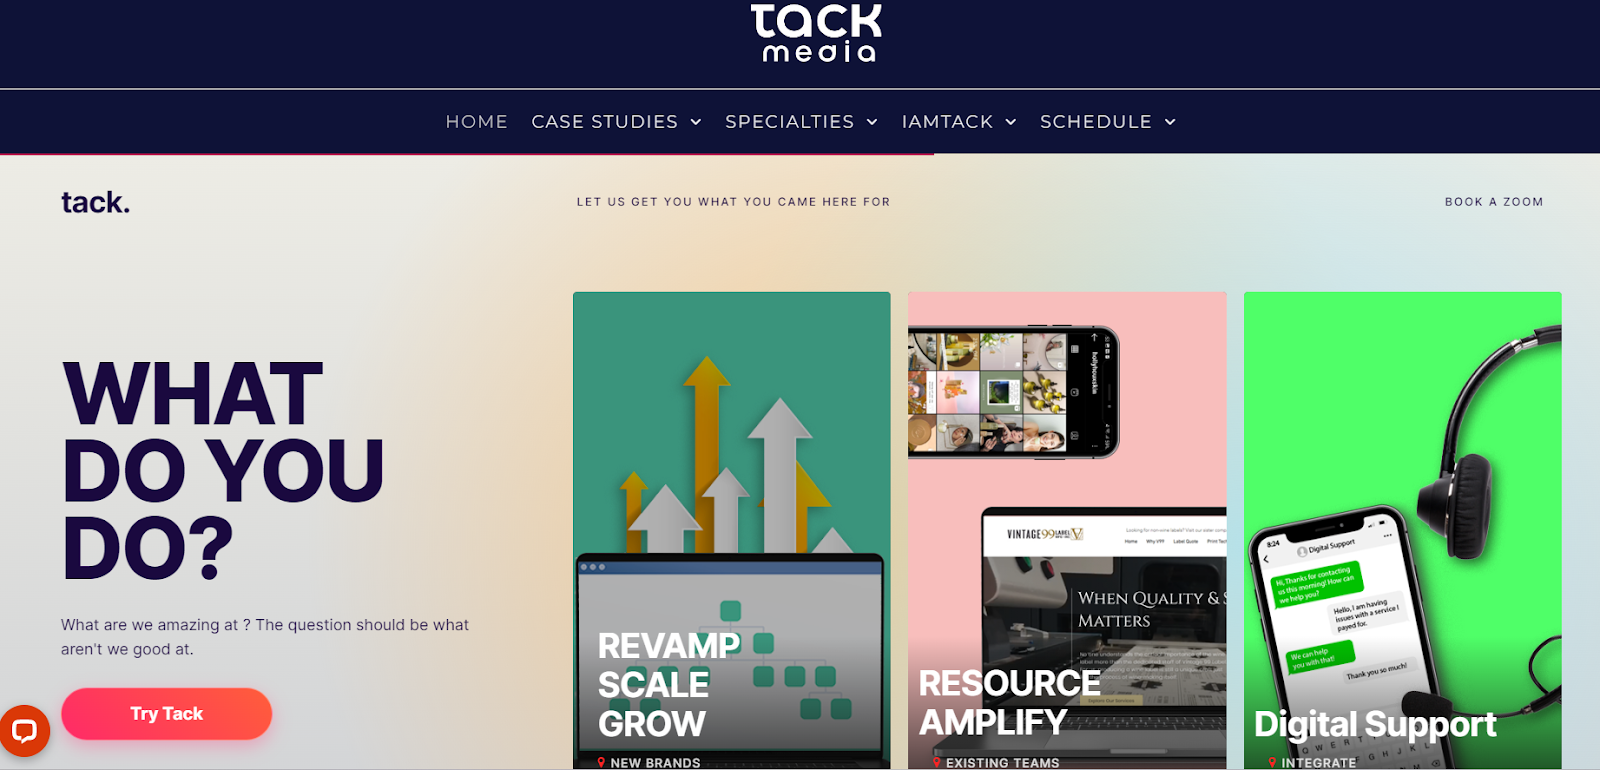 Tack Media Digital Marketing Agency website